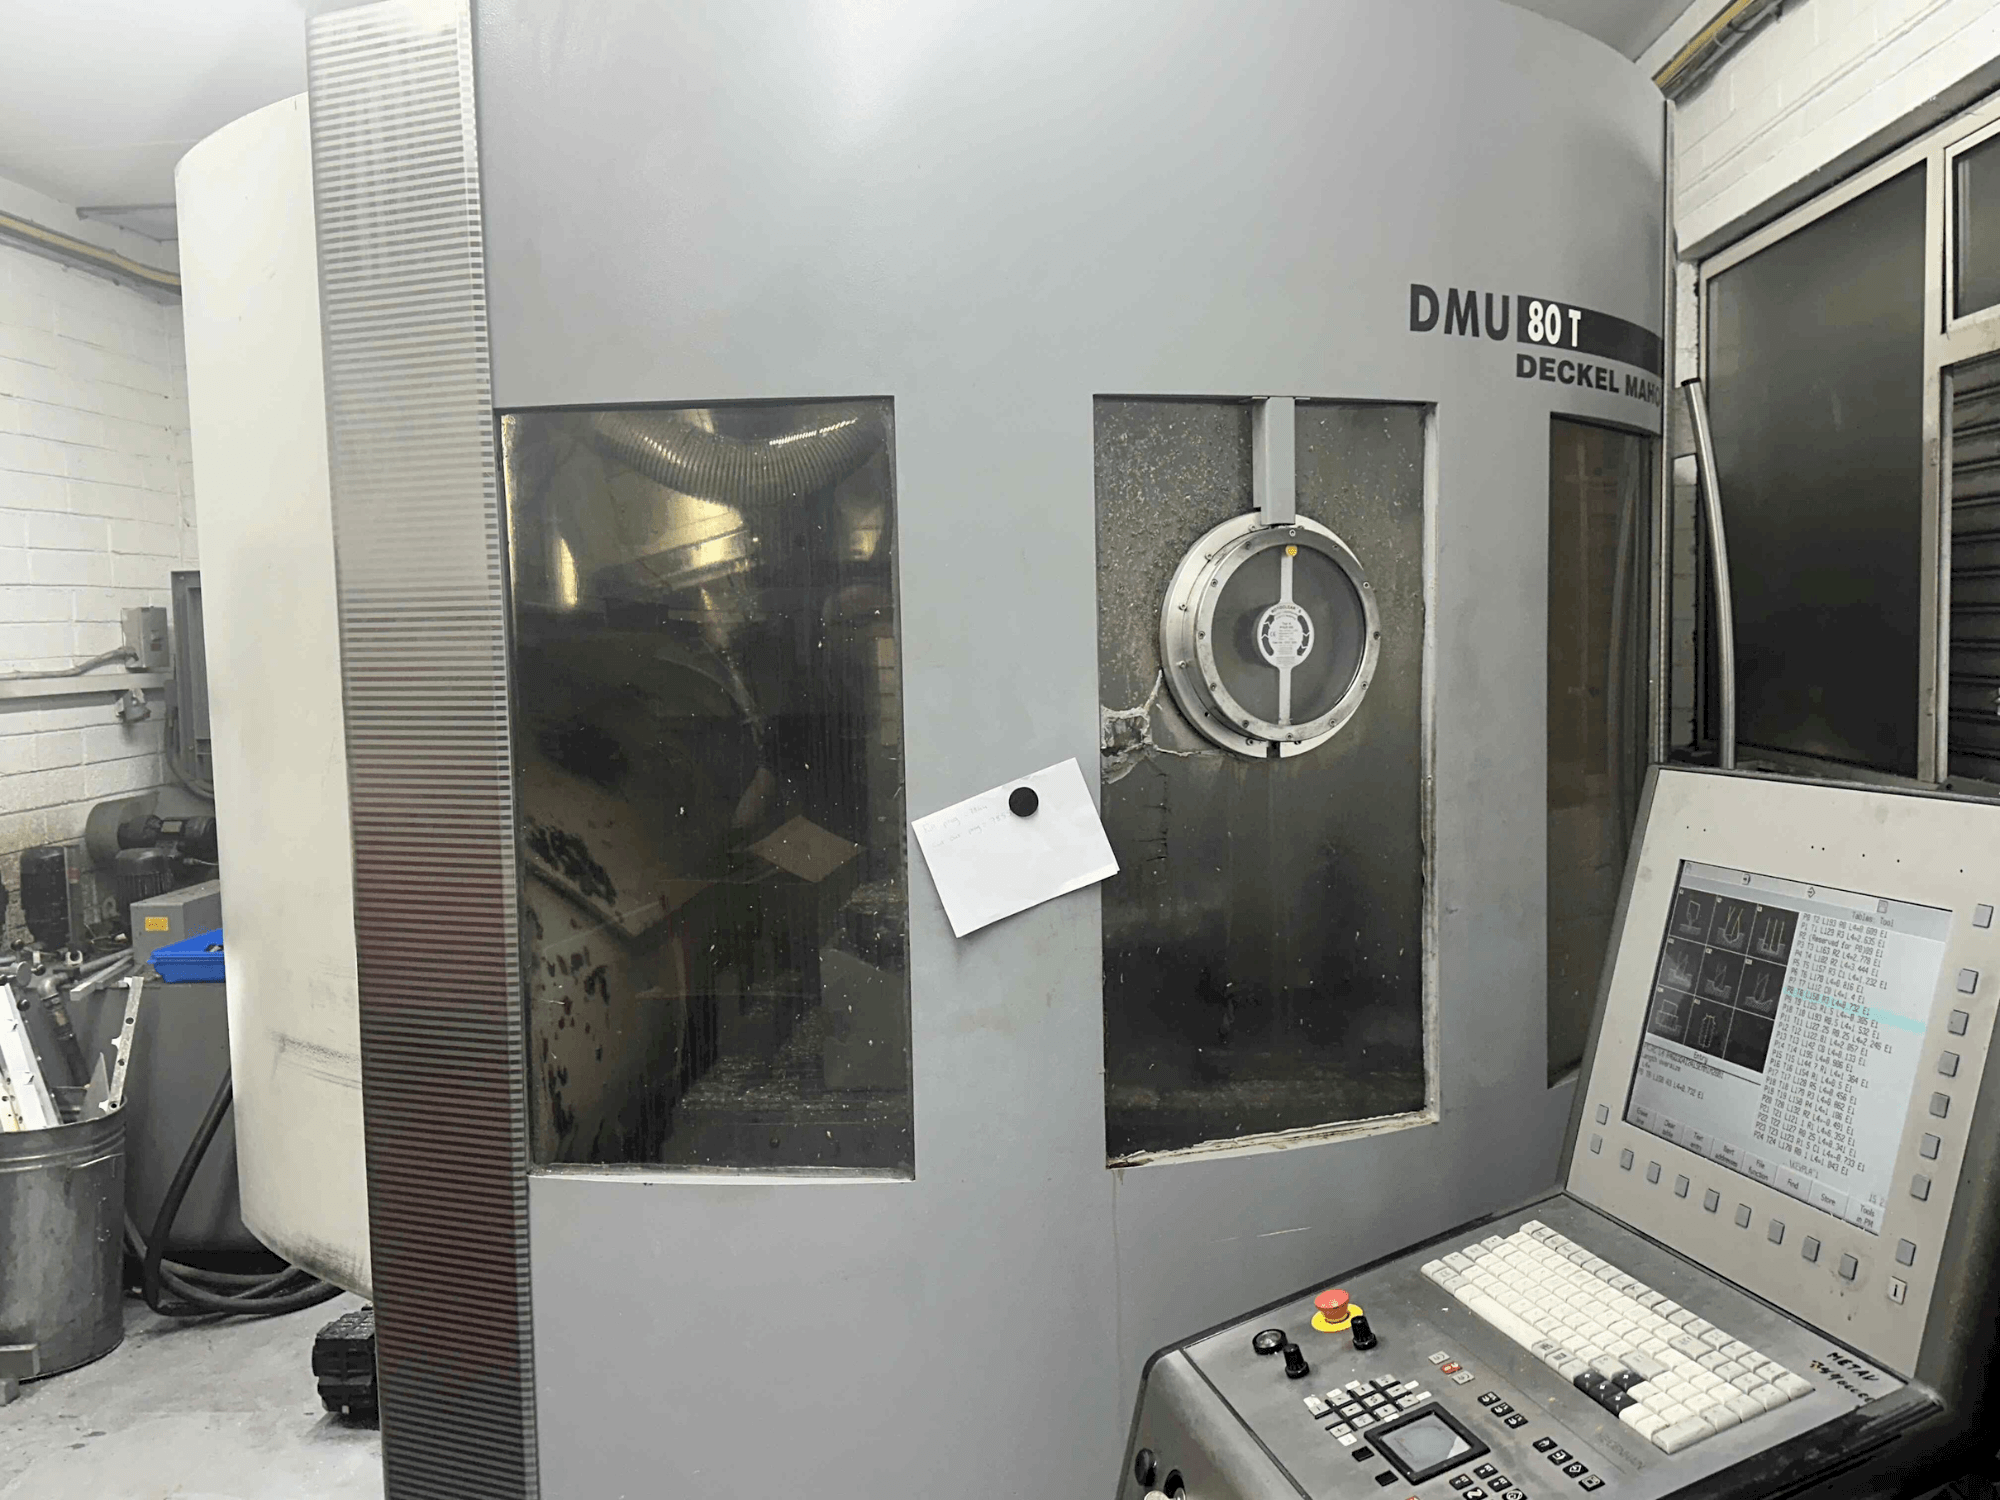 Vista frontale della macchina DECKEL MAHO DMU 80T (2002)